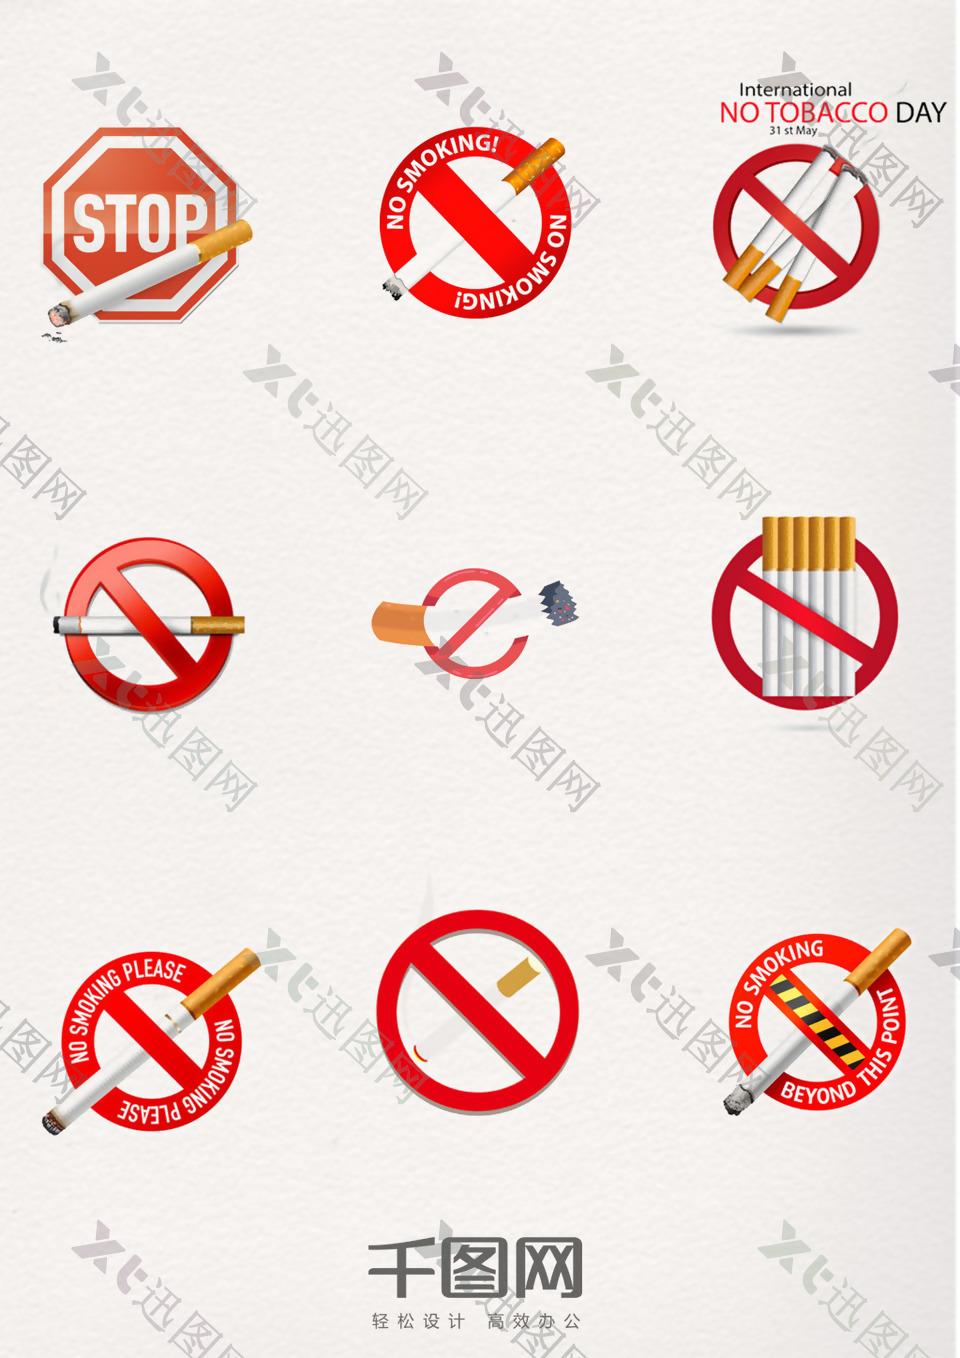 禁止吸烟提示红色元素